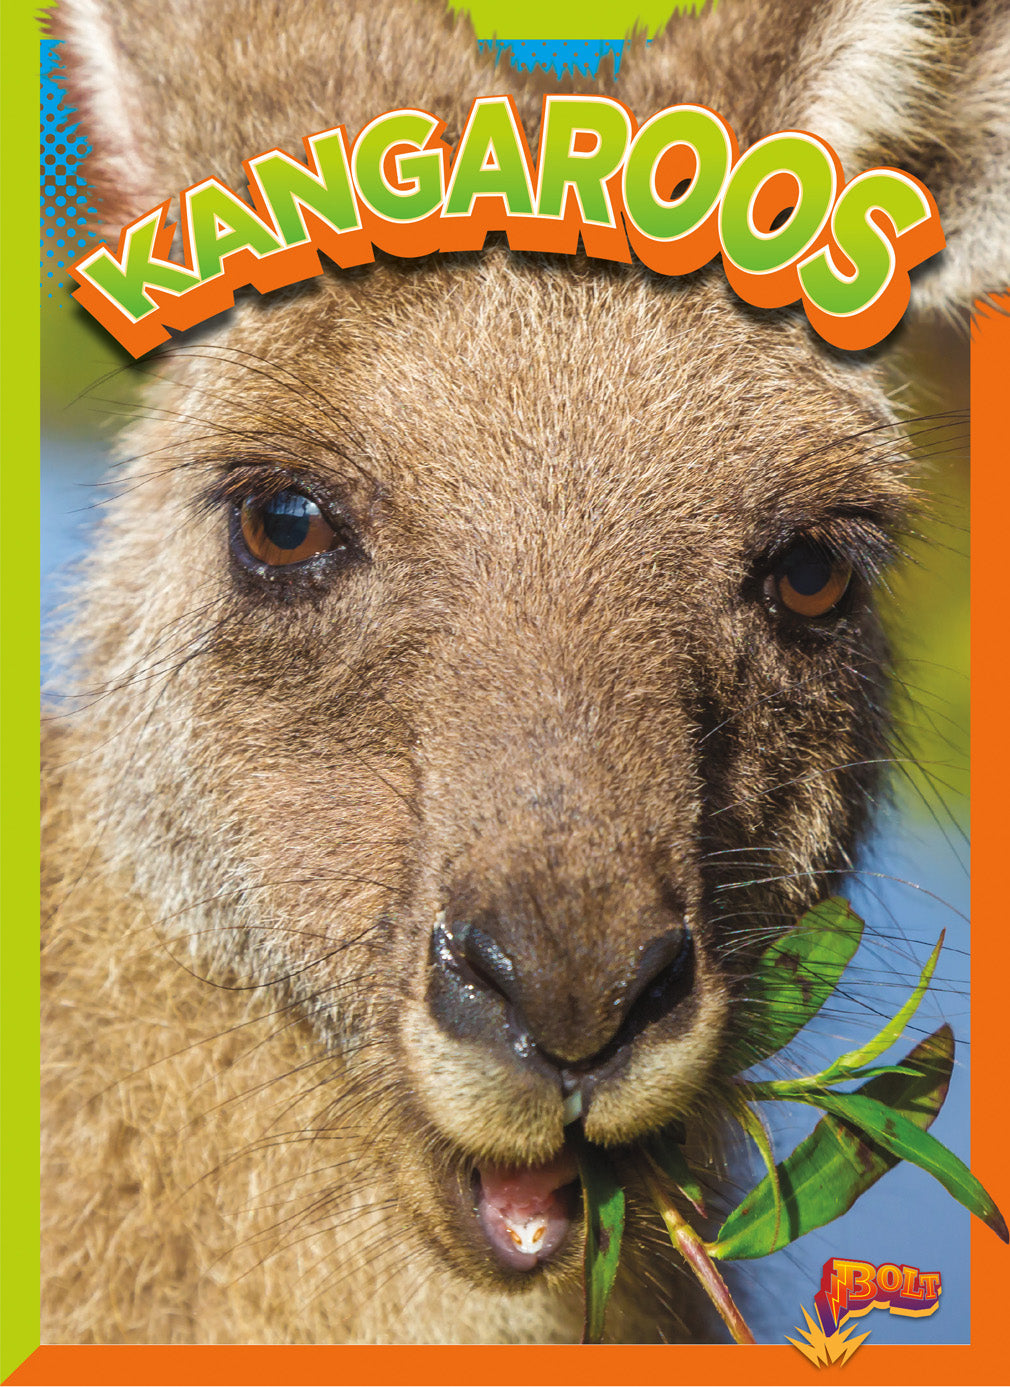 Wild Animal Kingdom: Kangaroos